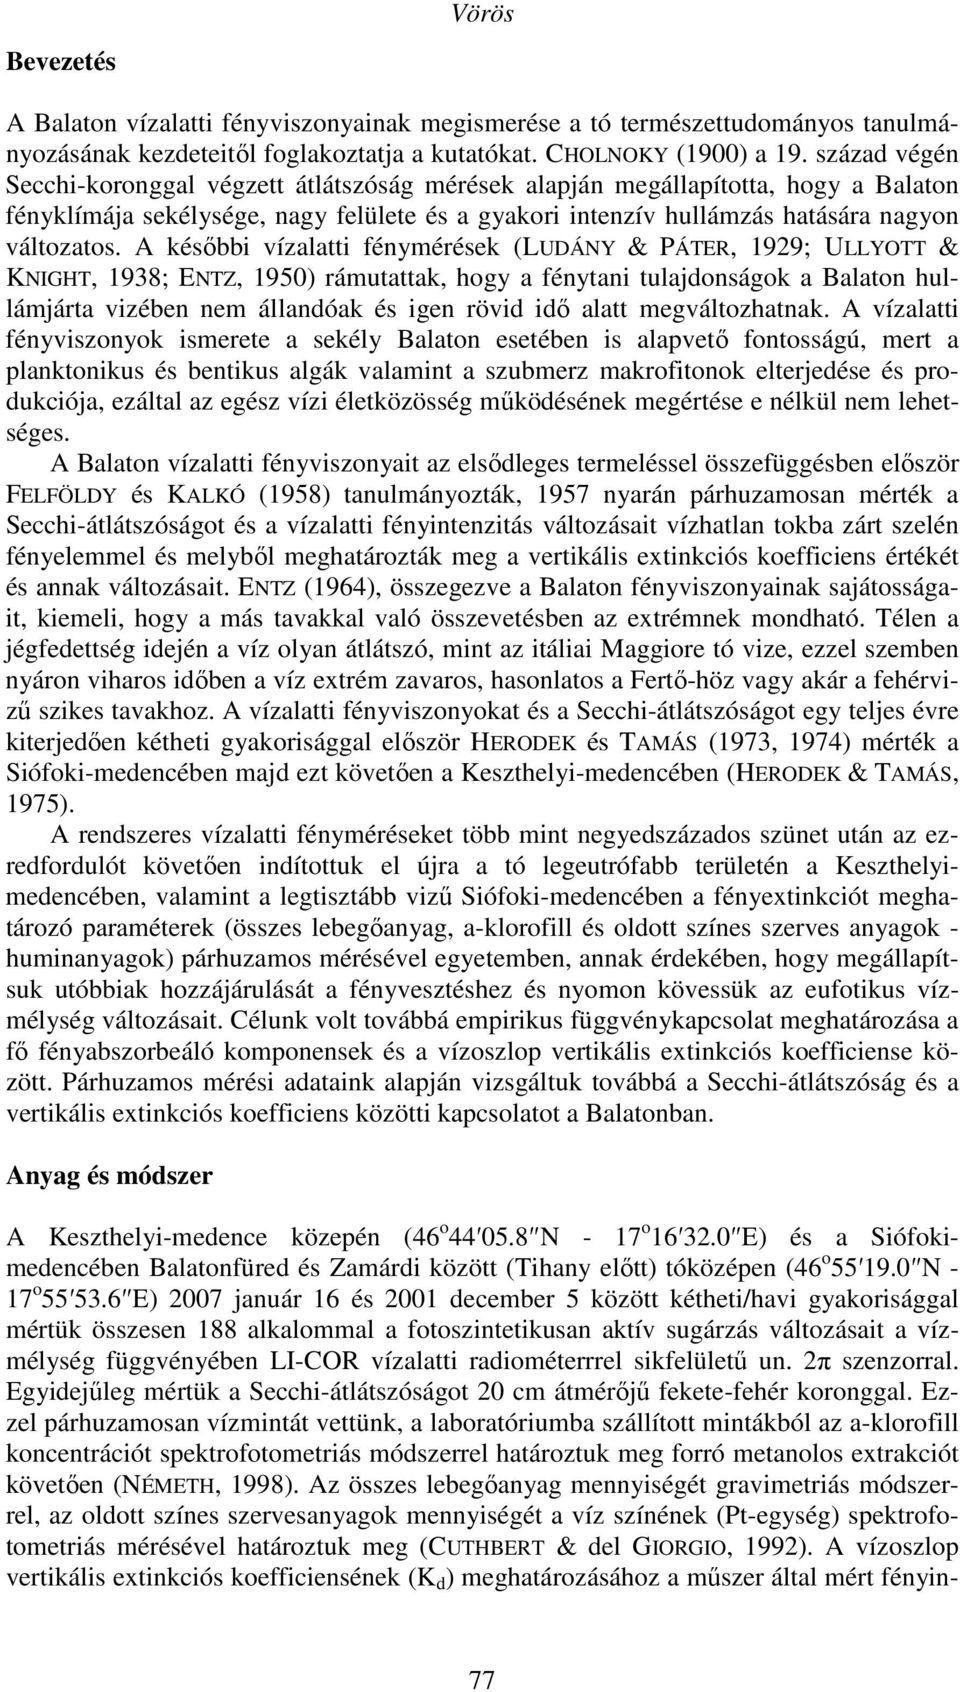 A későbbi vízalatti fénymérések (LUDÁNY & PÁTER, 1929; ULLYOTT & KNIGHT, 1938; ENTZ, 1950) rámutattak, hogy a fénytani tulajdonságok a Balaton hullámjárta vizében nem állandóak és igen rövid idő